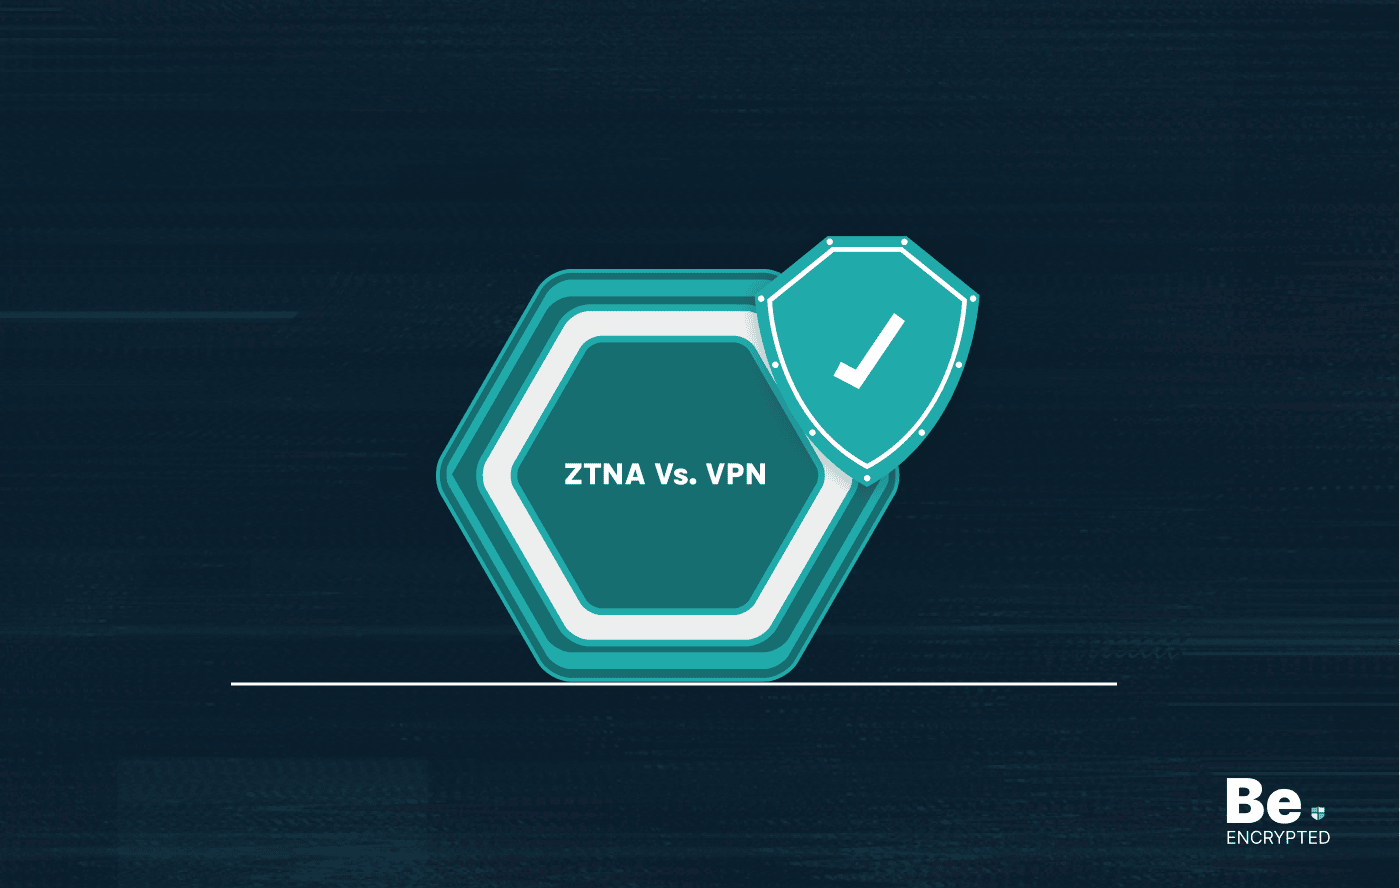 ZTNA Vs. VPN